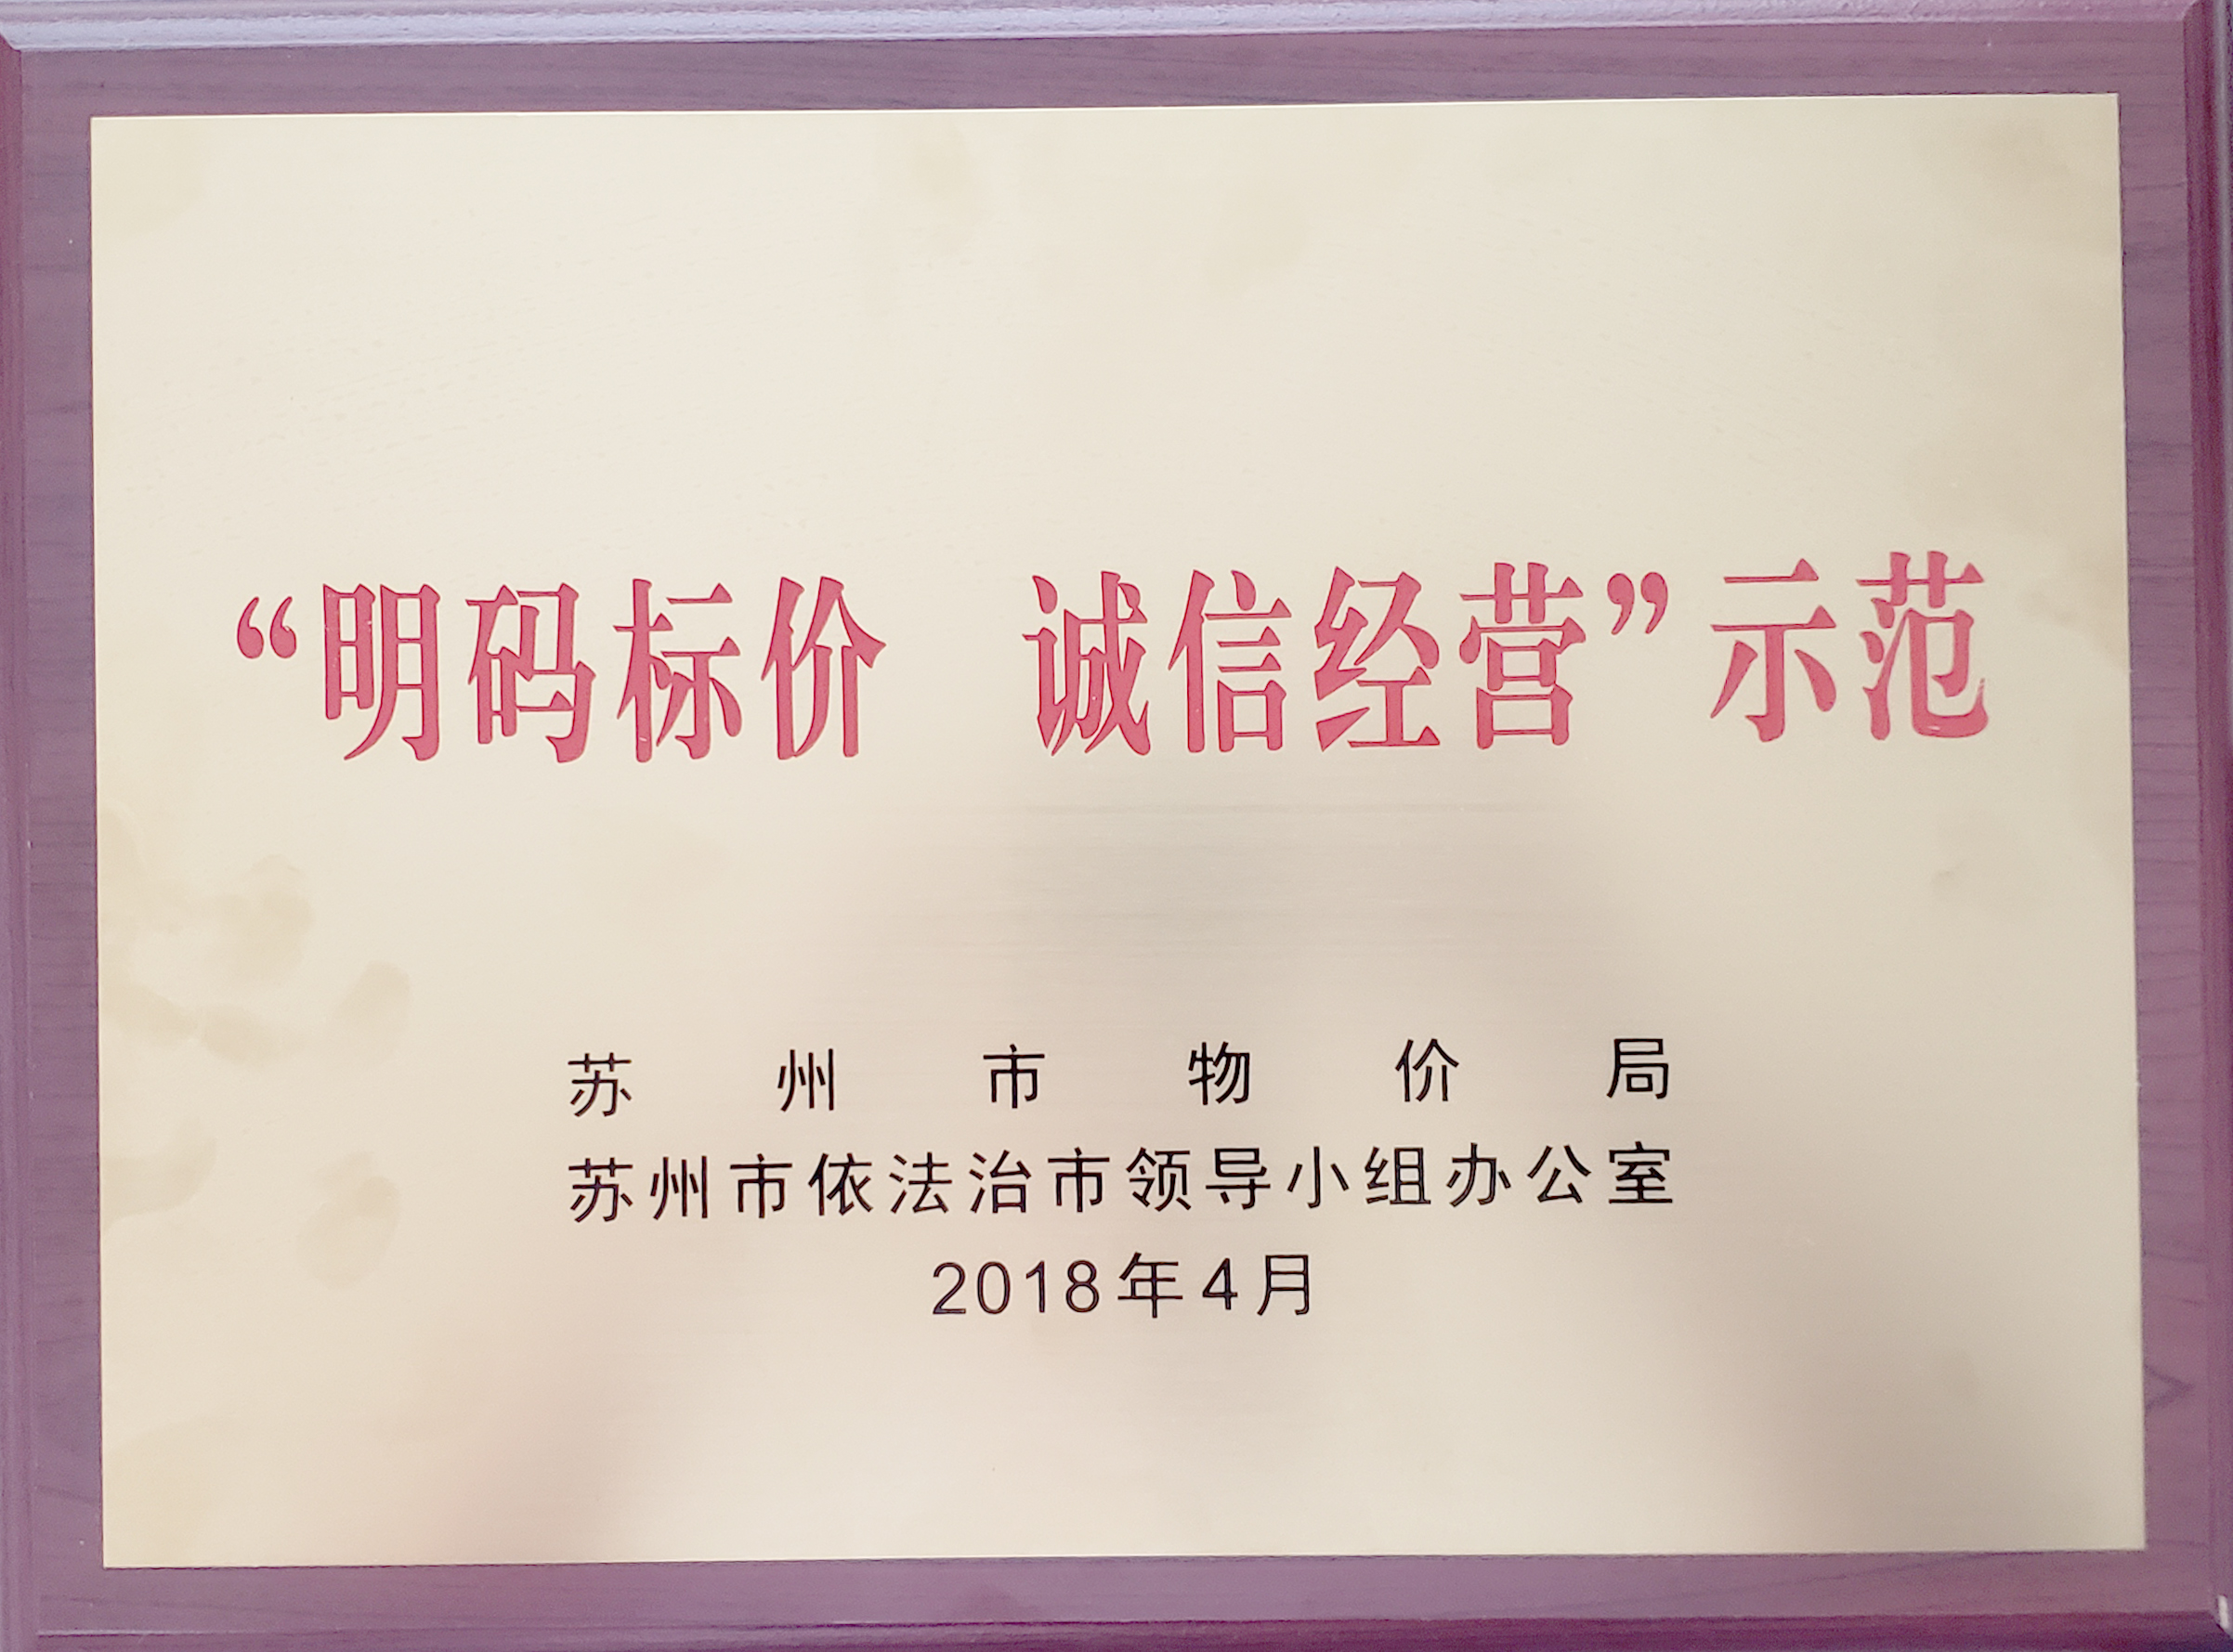 张家港市环宇职业培训学校荣获《苏州市价格诚信单位》